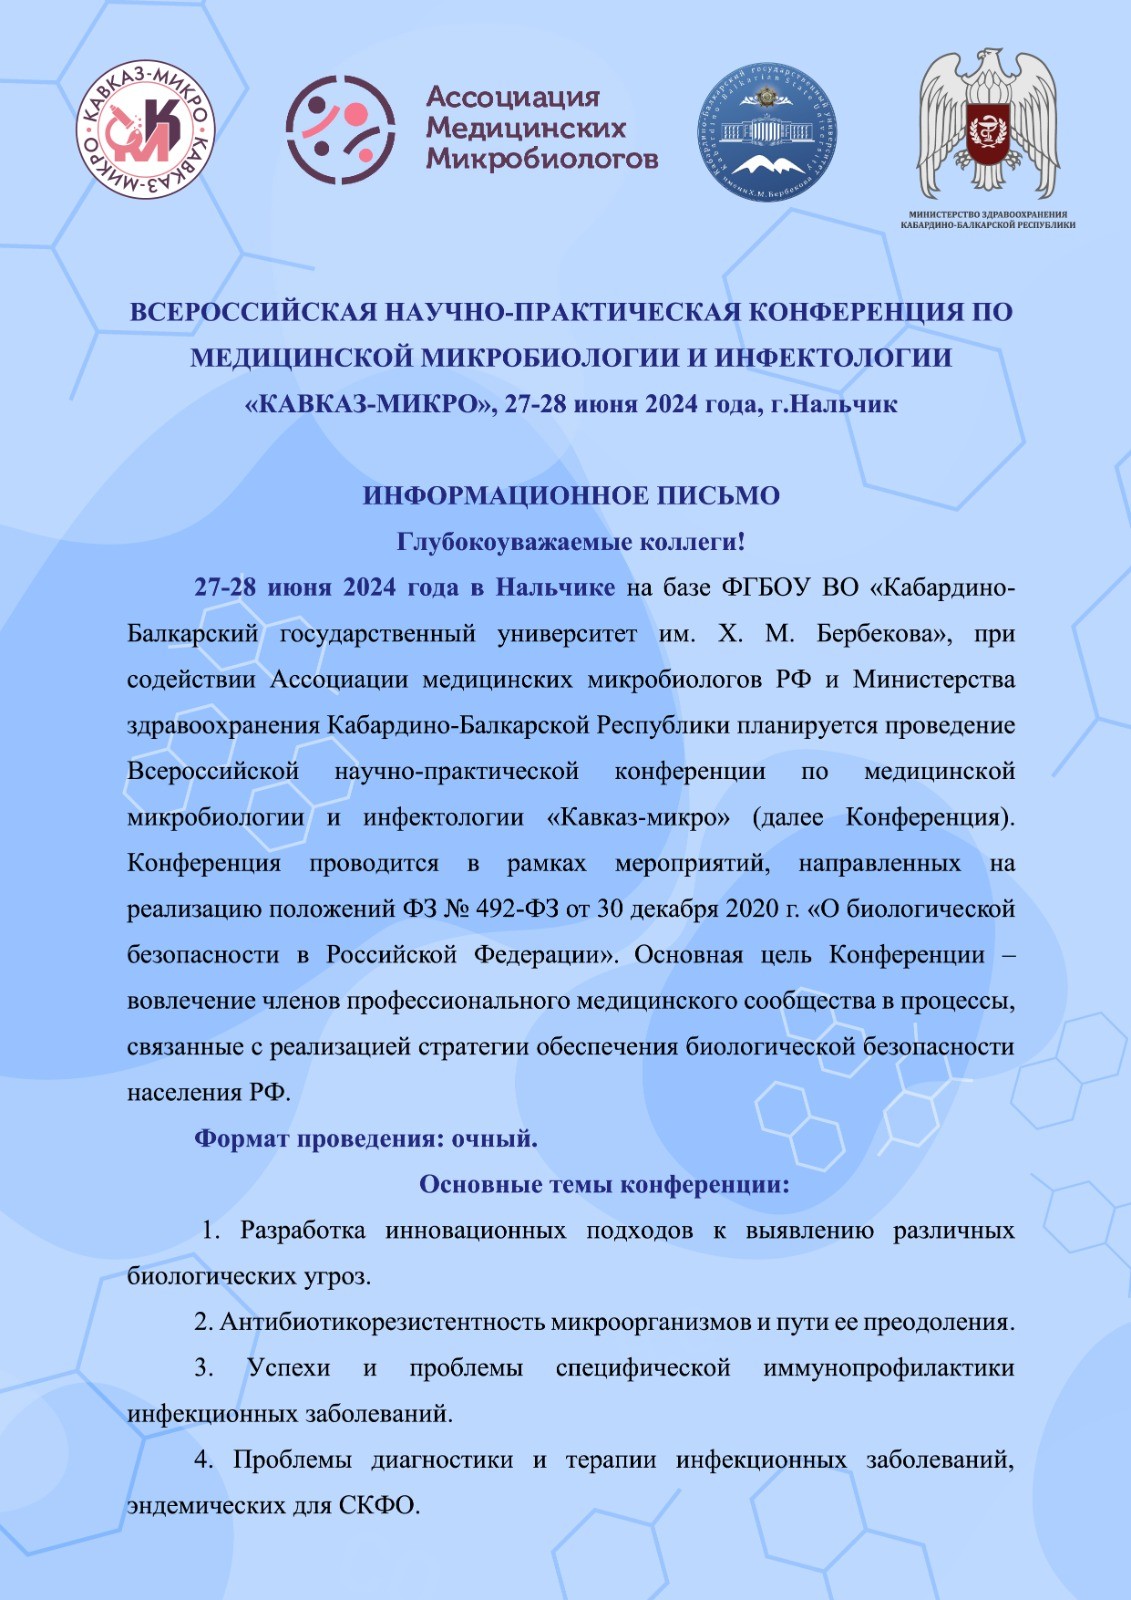 27-28 июня - Всероссийская научно-практическая конференция по медицинской микробиологии и инфектологии